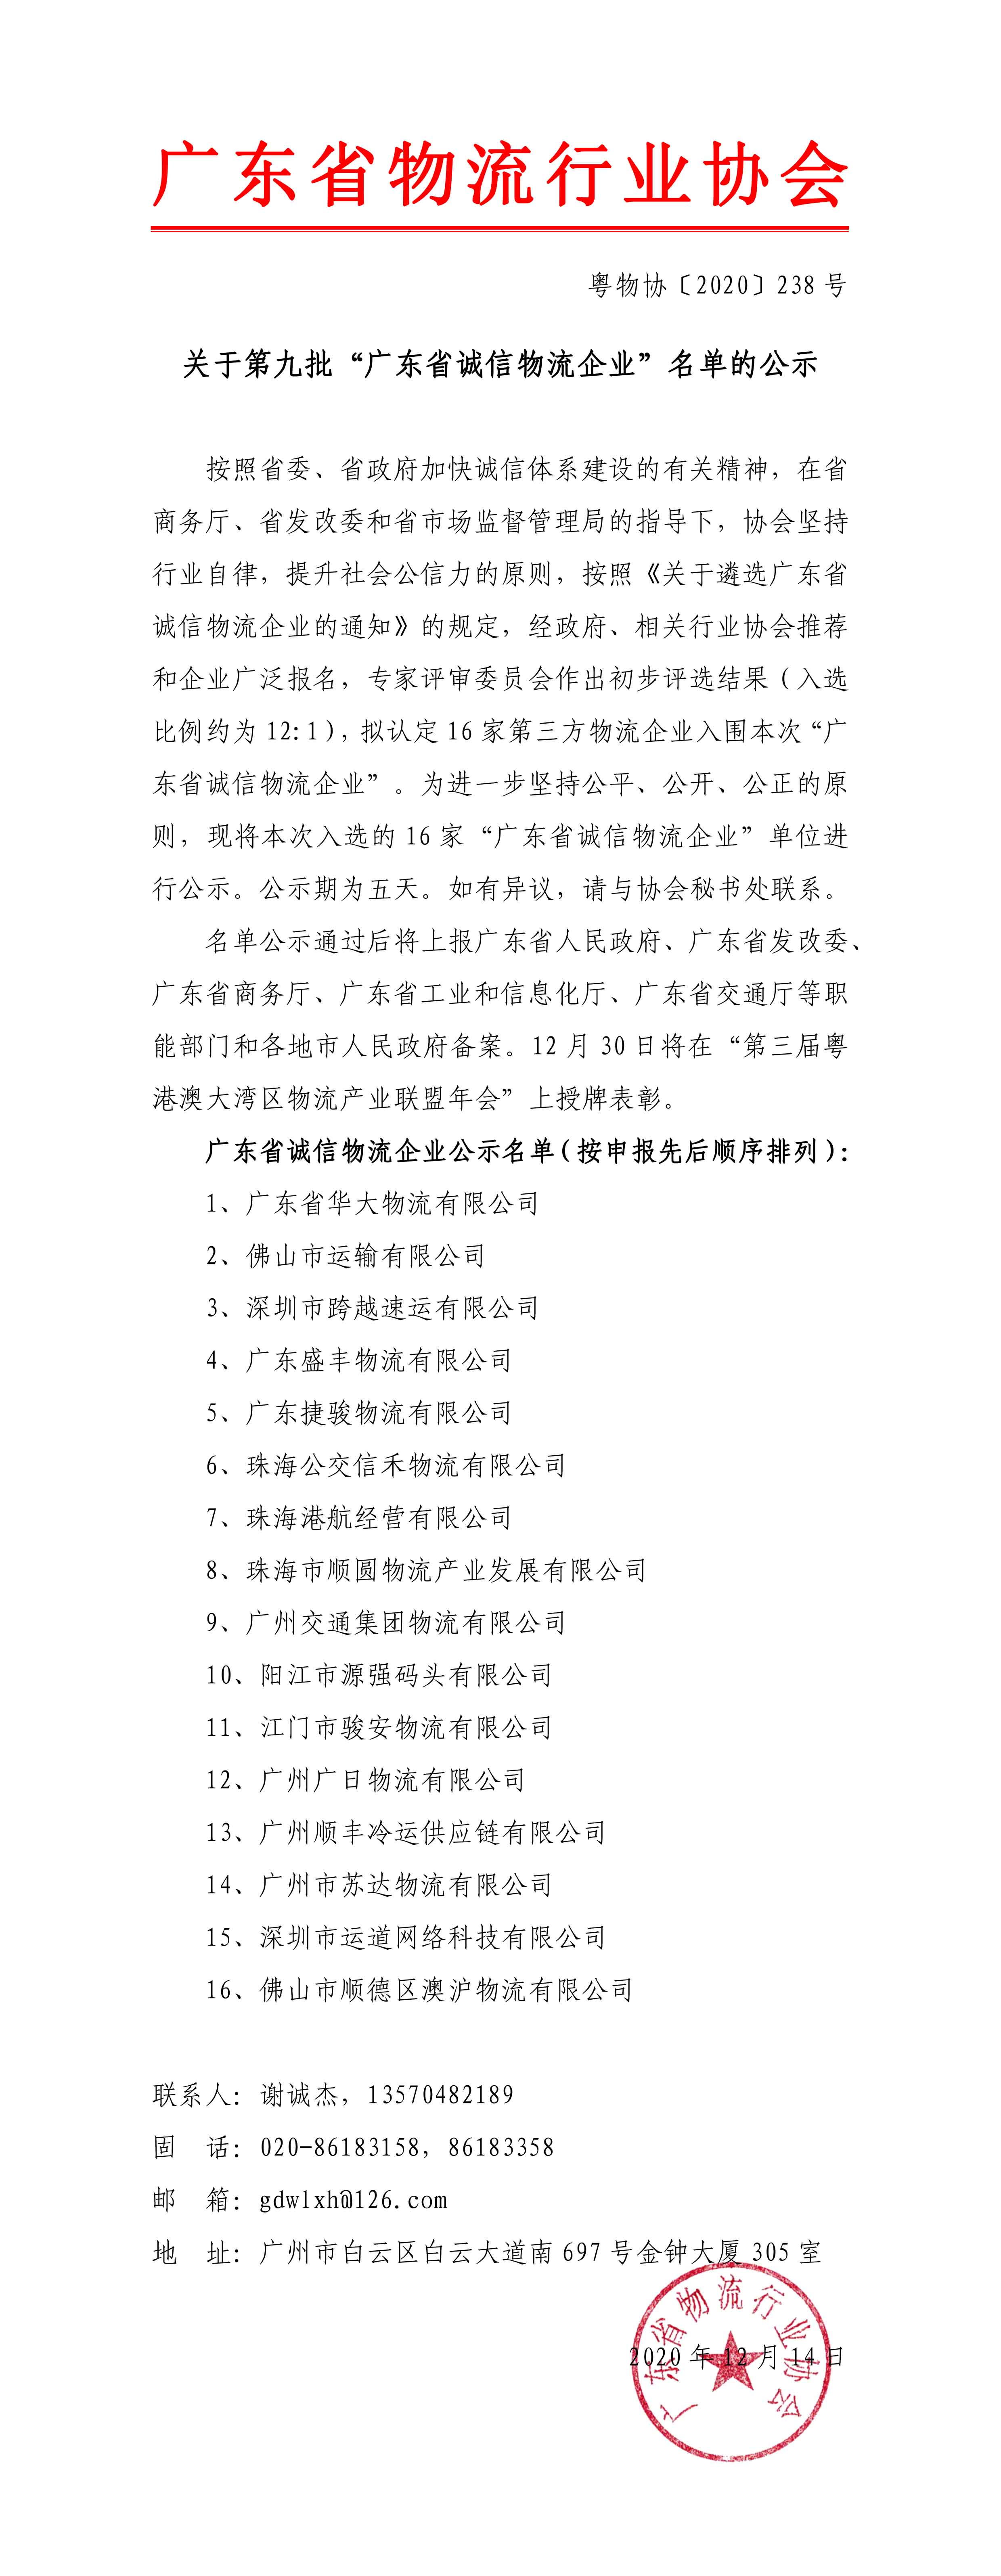 关于第九批“广东省诚信物流企业”名单的公示202011211-1.jpg